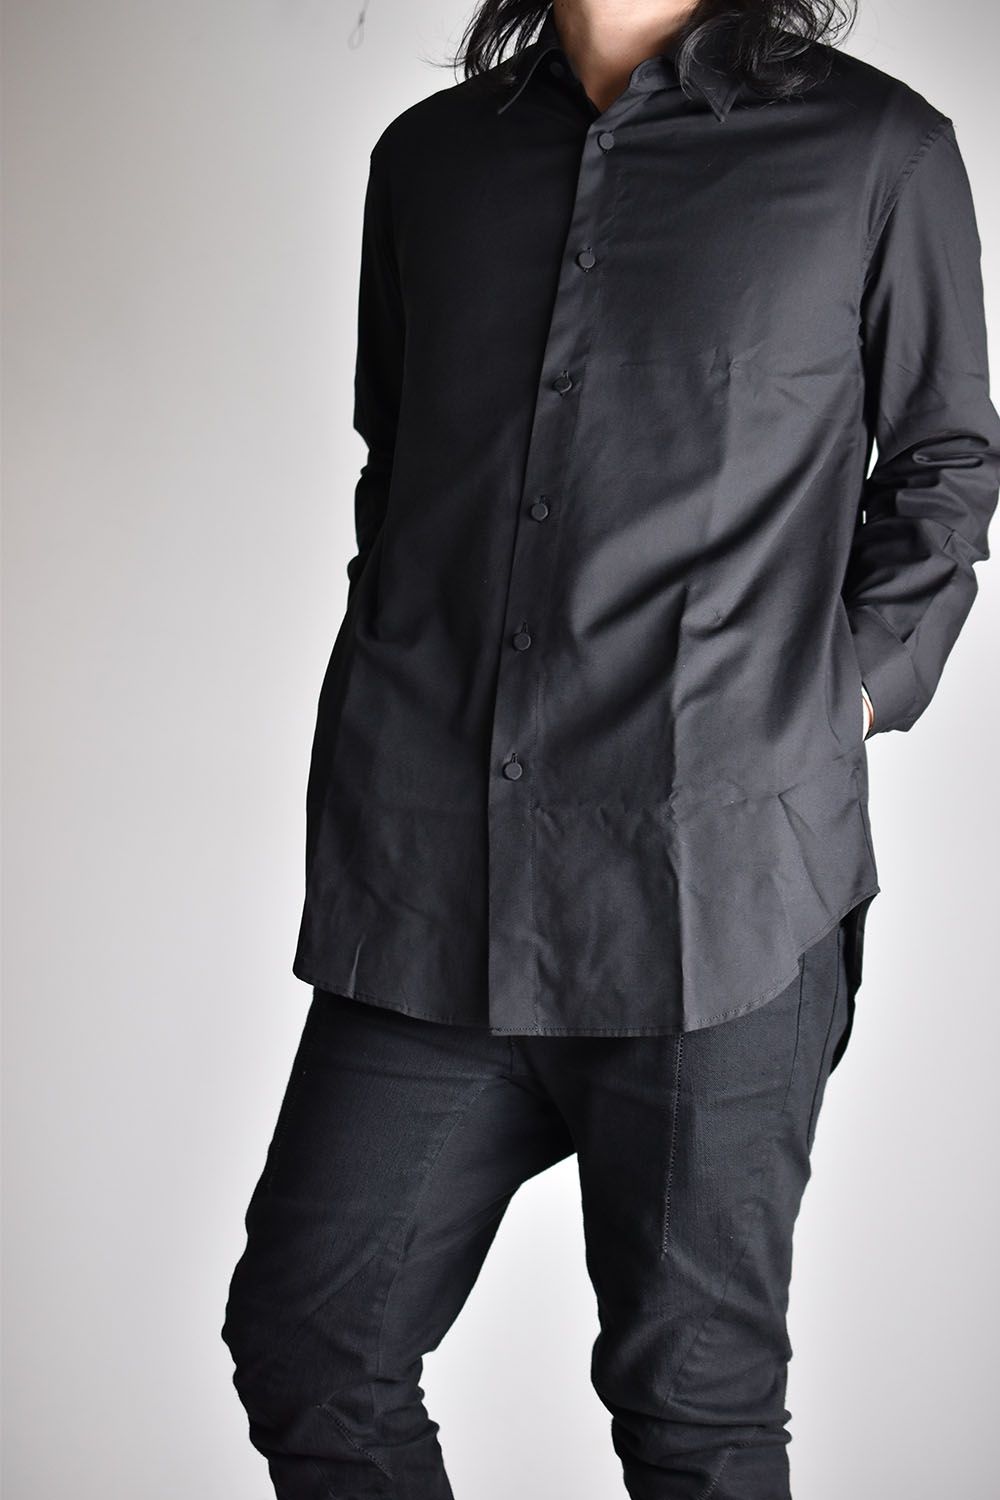 Cotton Rayon Sapphire Cool Shirts"Black"/コットンレーヨンサファイアクールシャツ"ブラック"